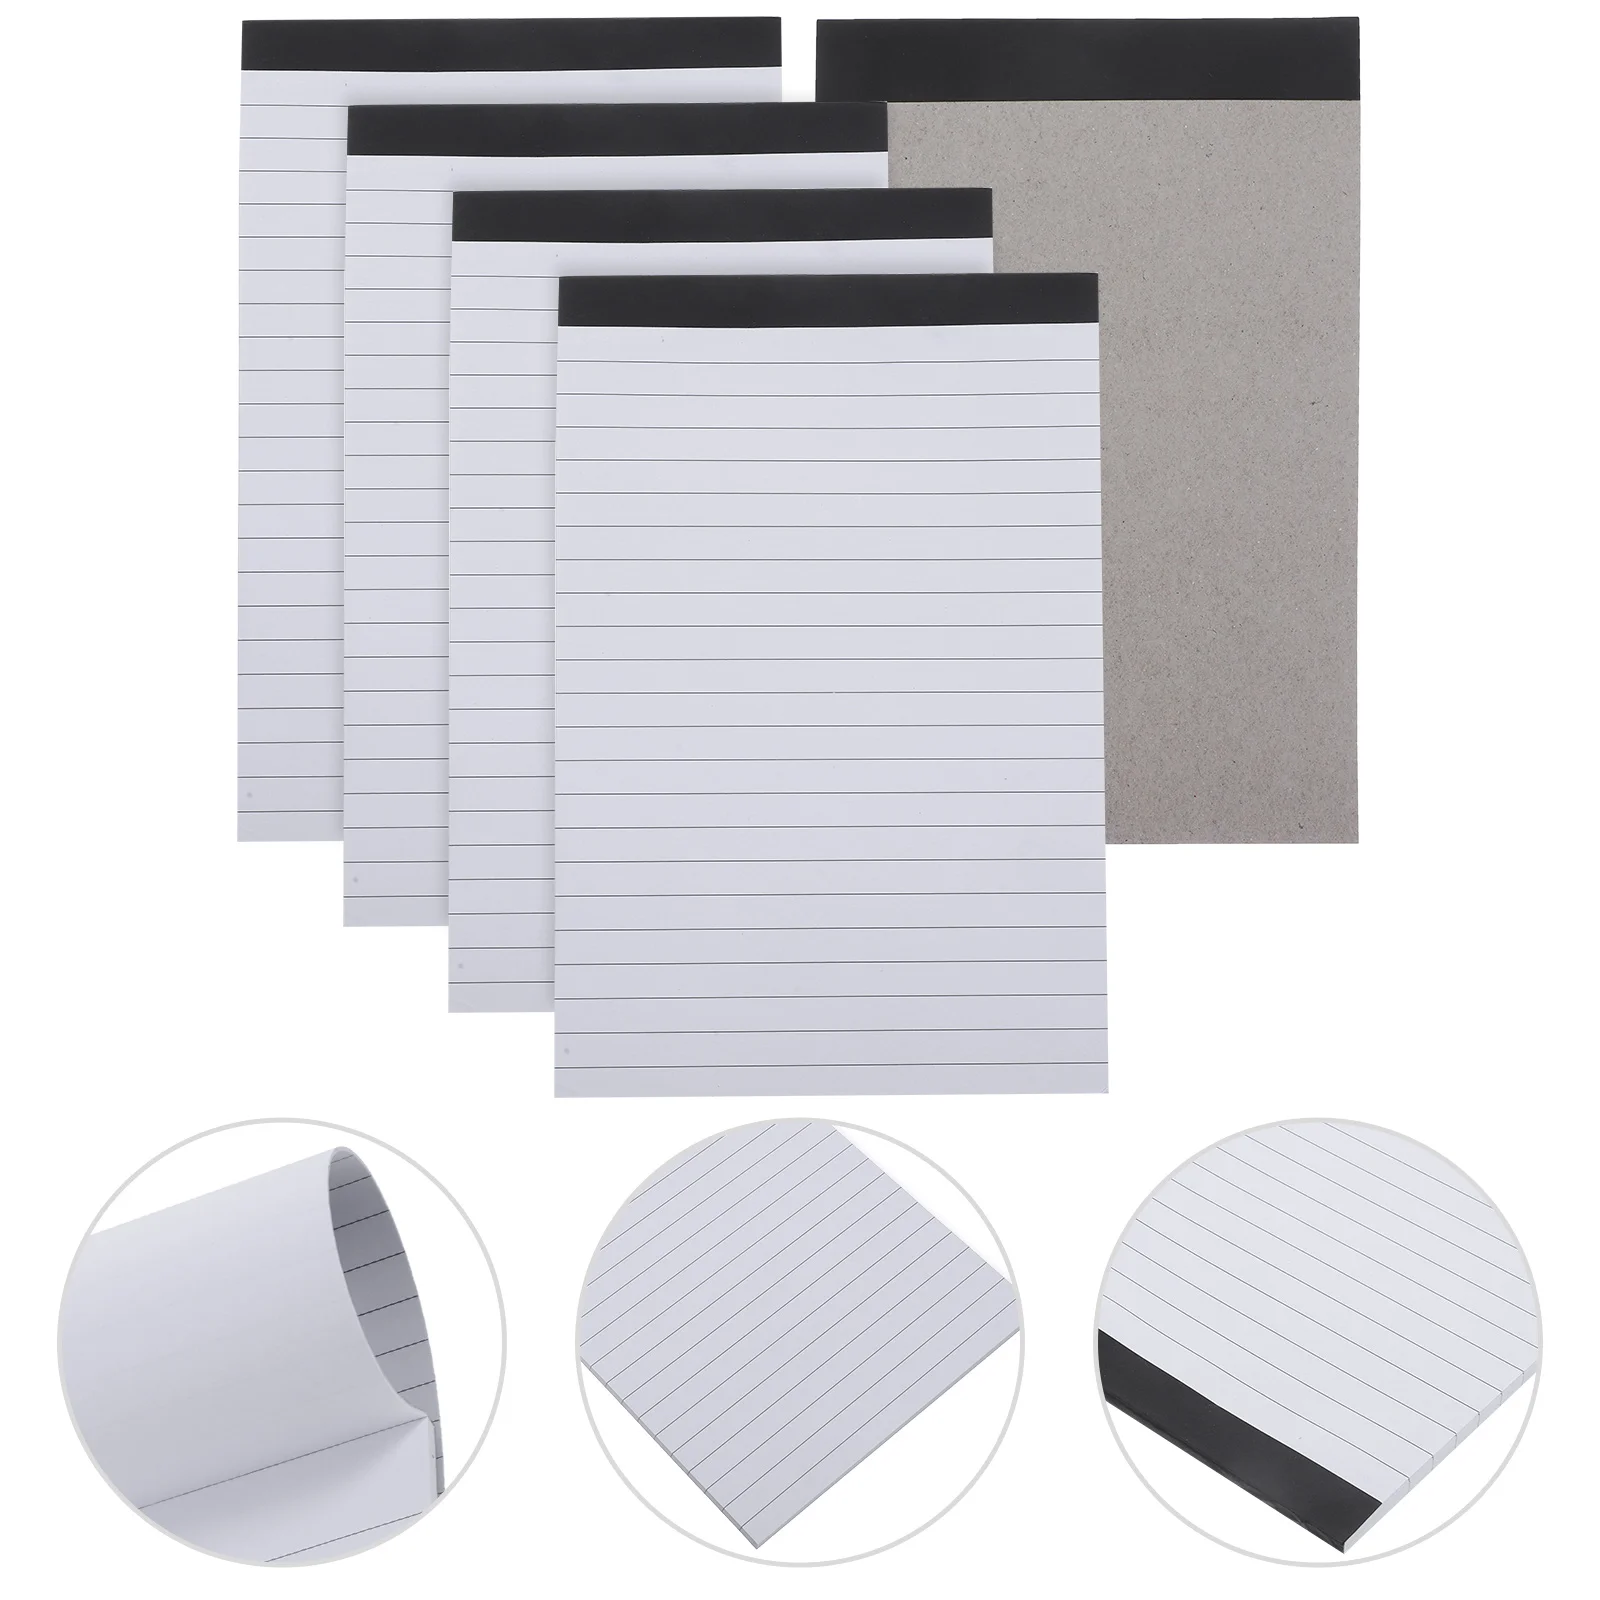 

Блокноты для офисных планшетов, 5 Книг, белые блокноты из бумаги с прямым зерном и царапинами